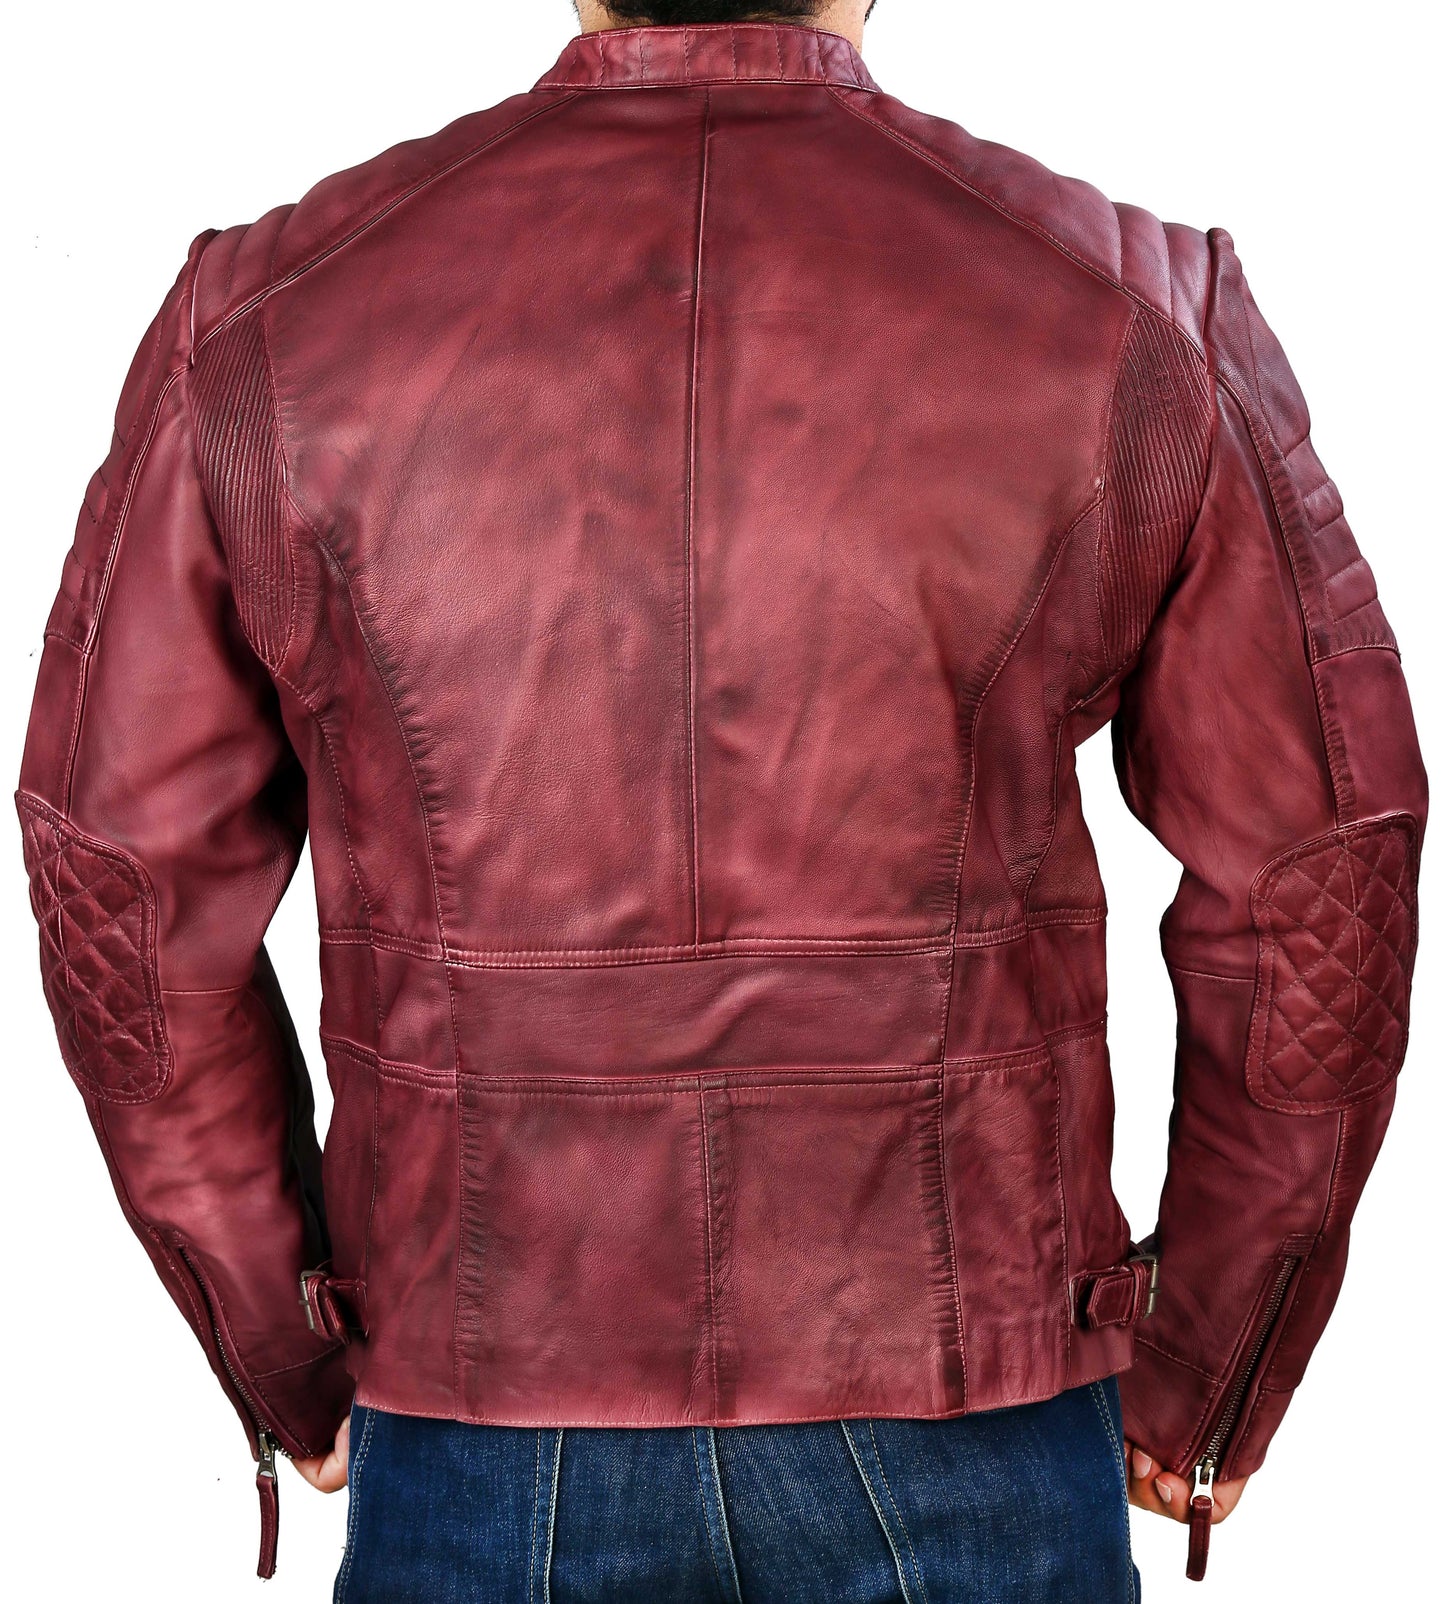 Men's Elite Herran Biker Motorcycle  Distressed Maroon Leather Jacket